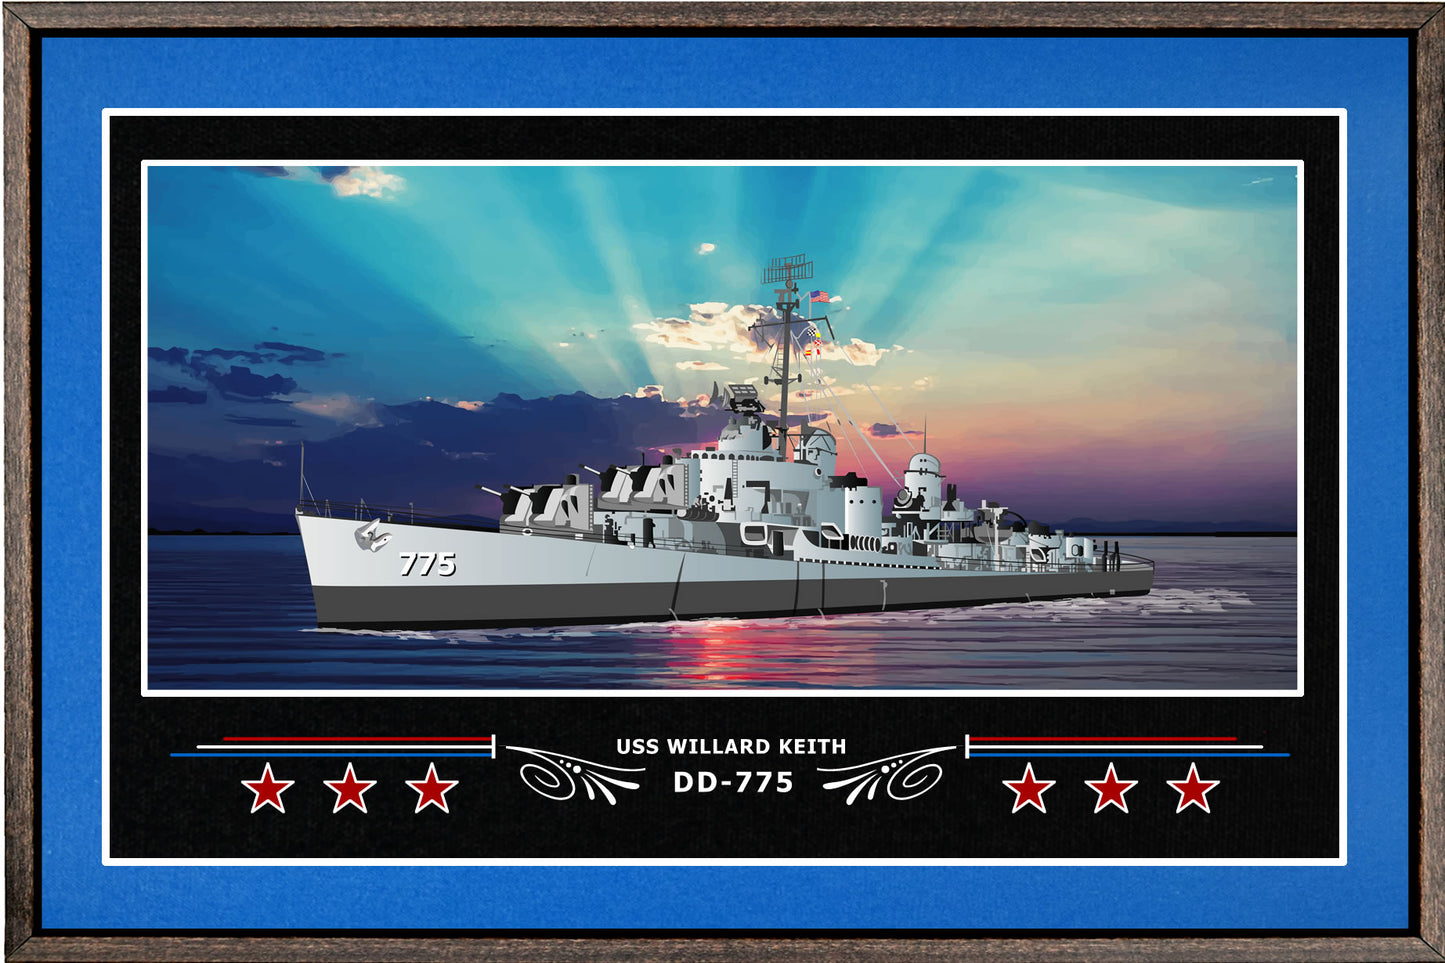 USS WILLARD KEITH DD 775 BOX FRAMED CANVAS ART BLUE